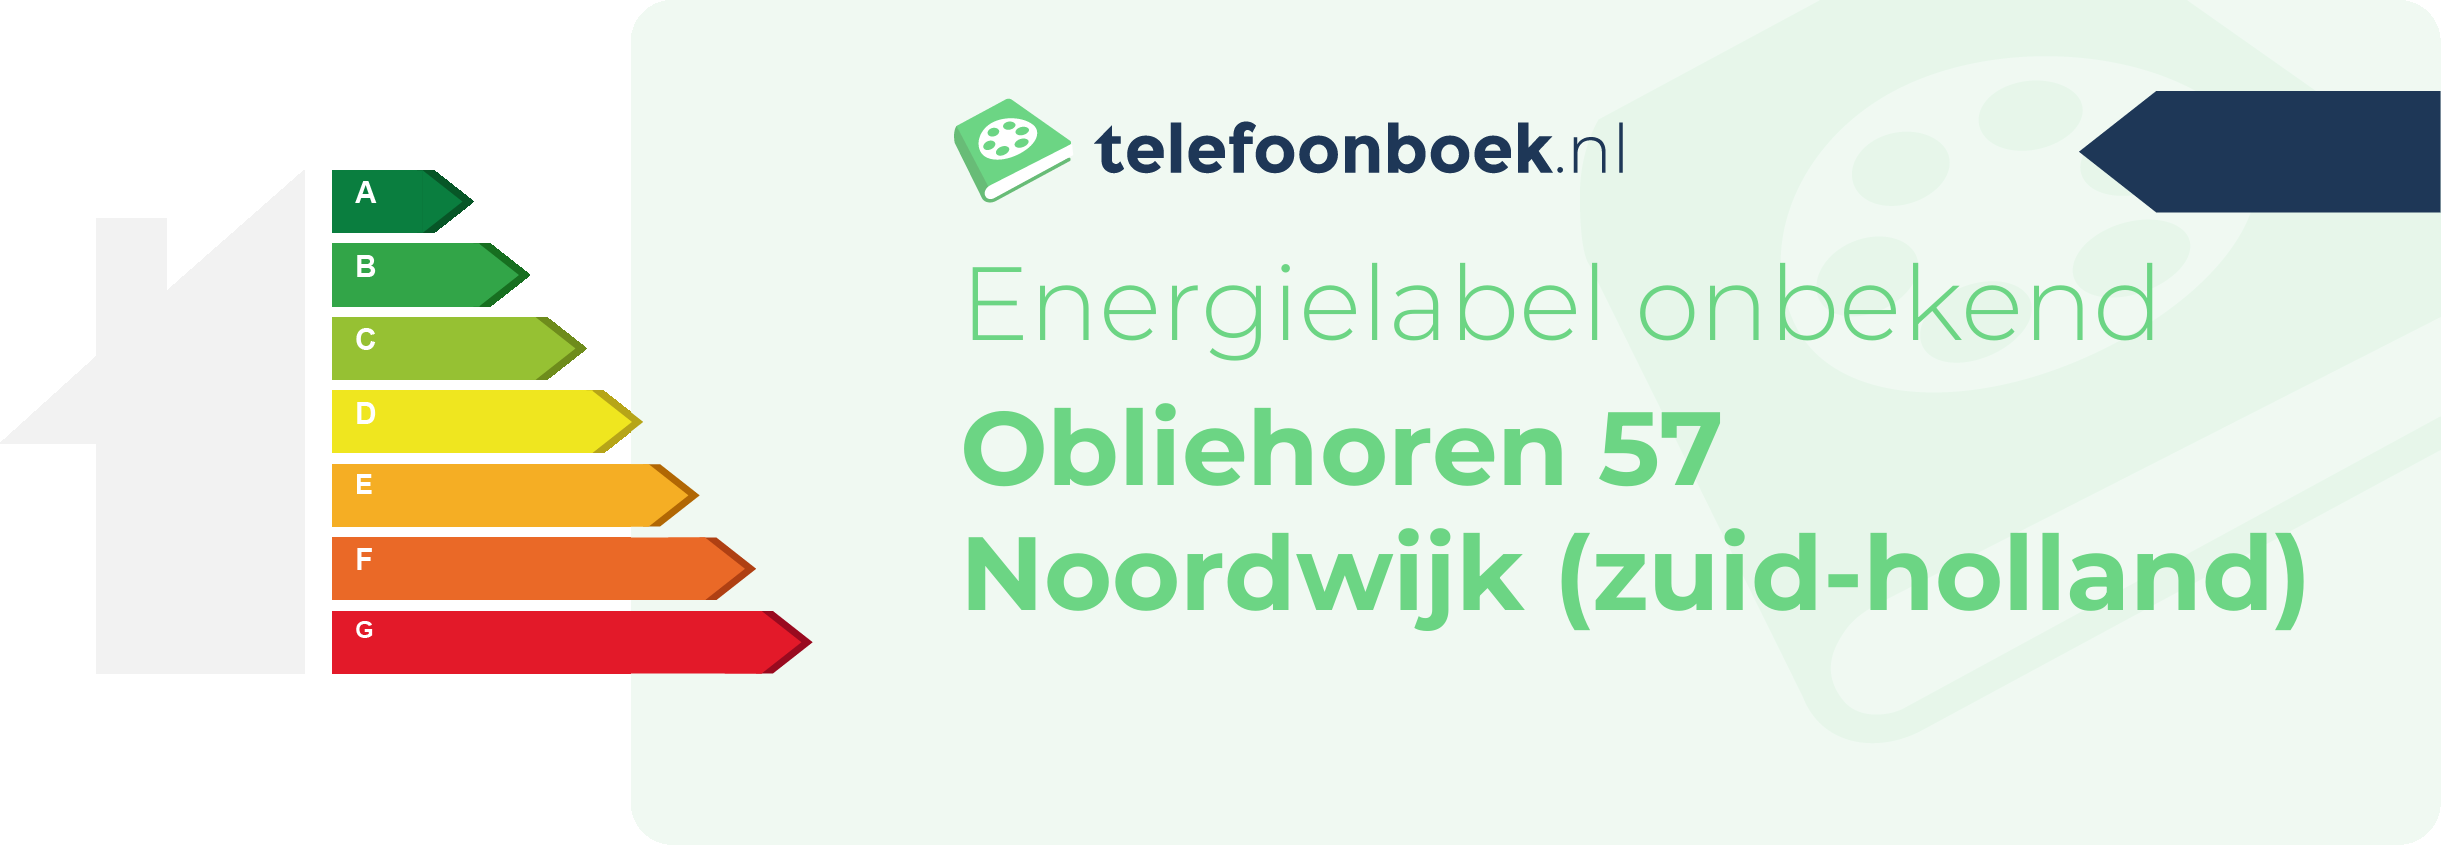 Energielabel Obliehoren 57 Noordwijk (Zuid-Holland)